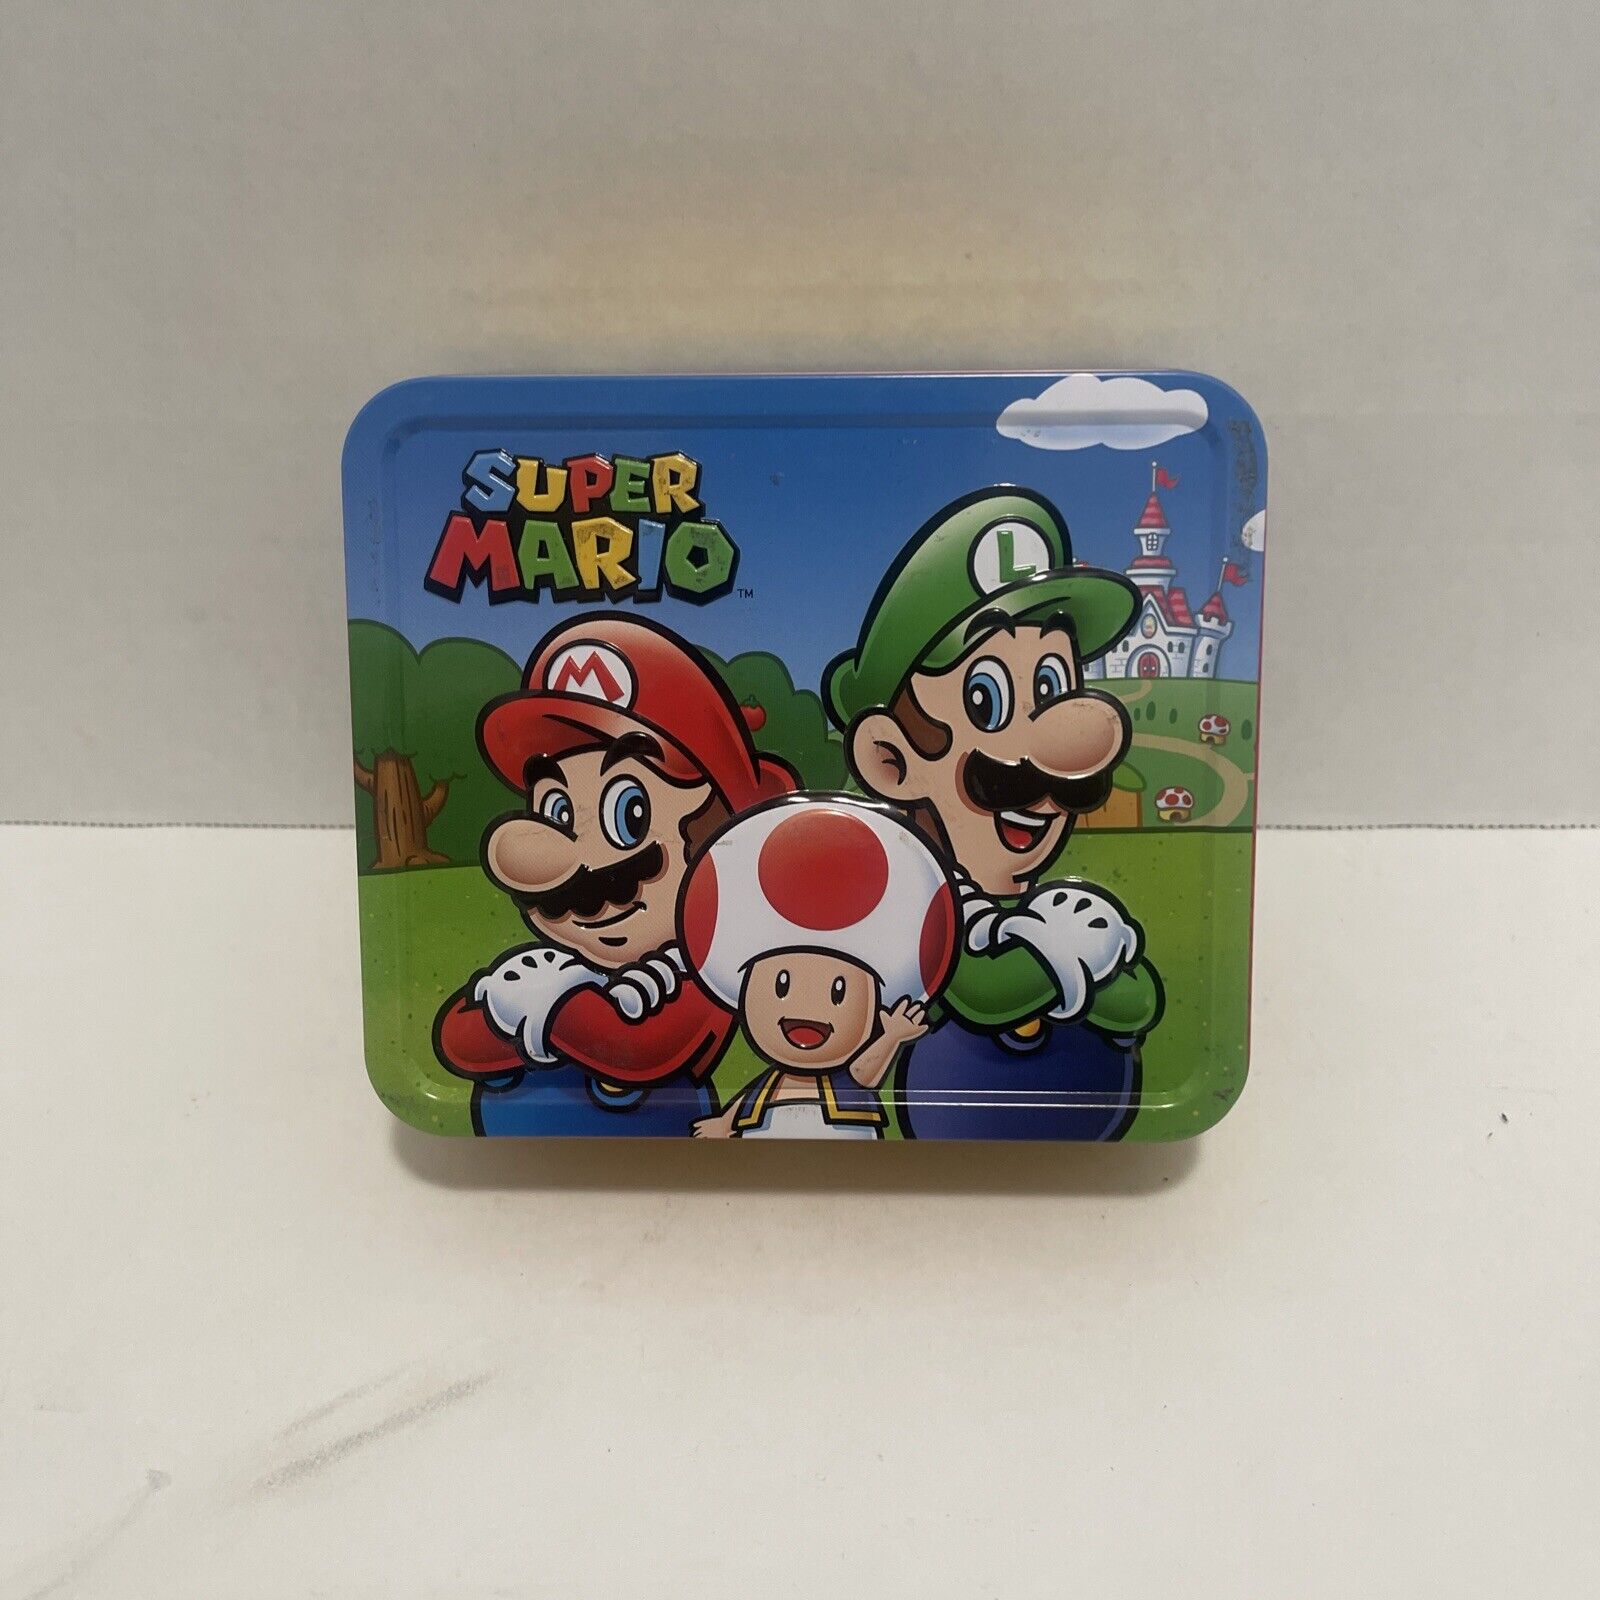 Super Mario Tin Box. Good Condition.